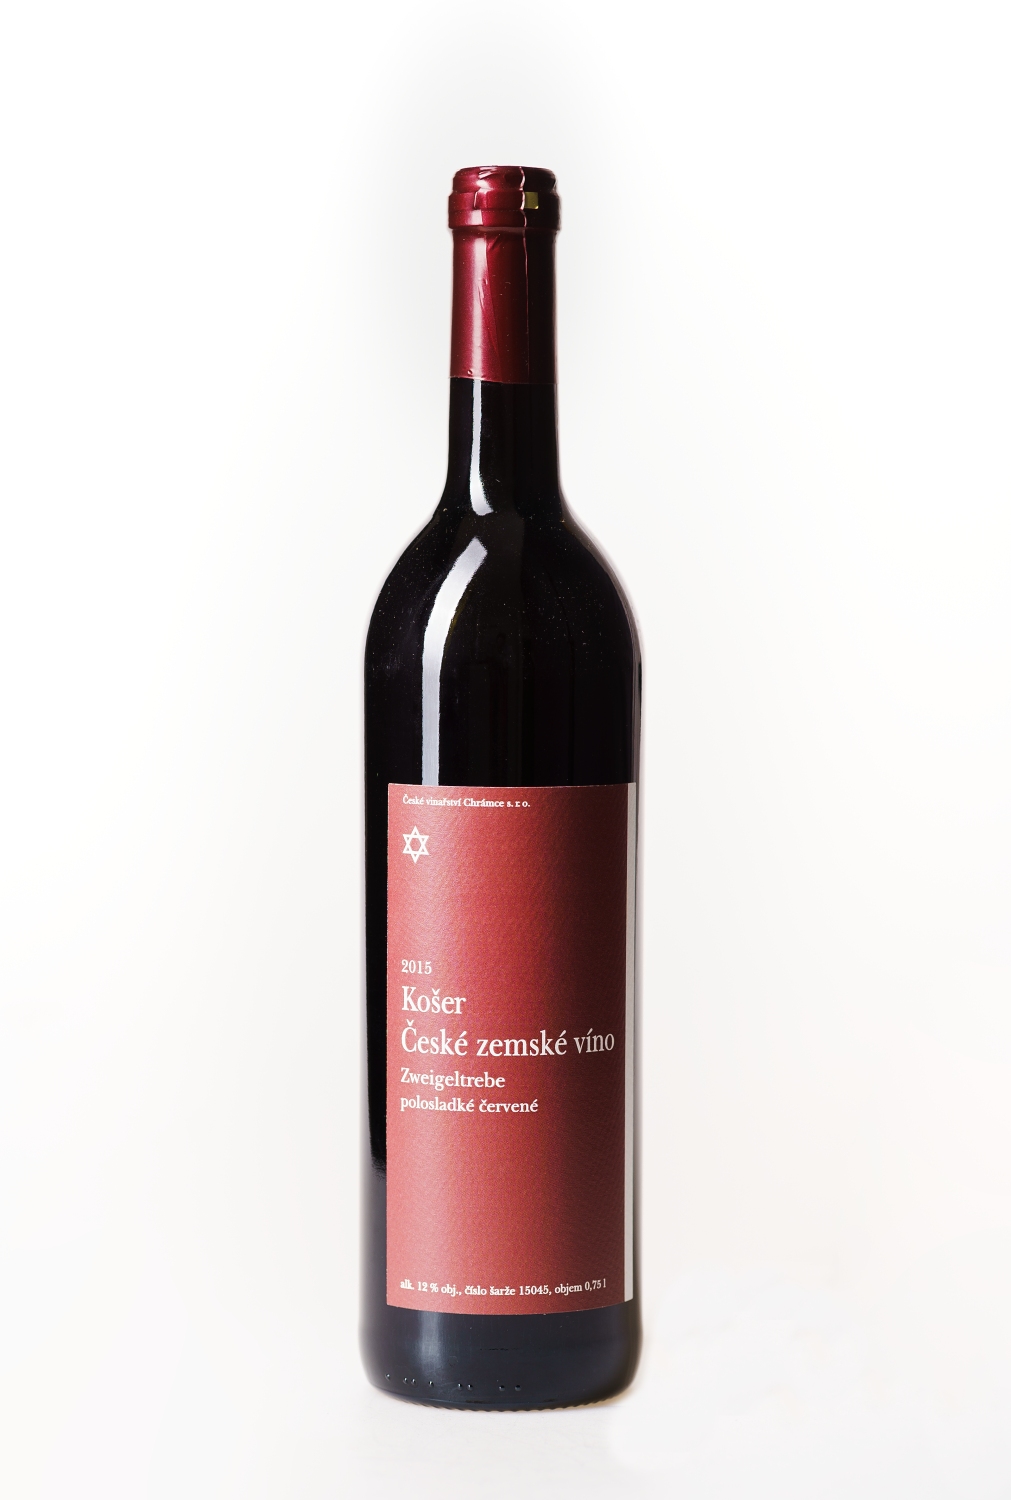 Zweigeltrebe polosladké košer 2015 červené polosladké víno 0,75 l